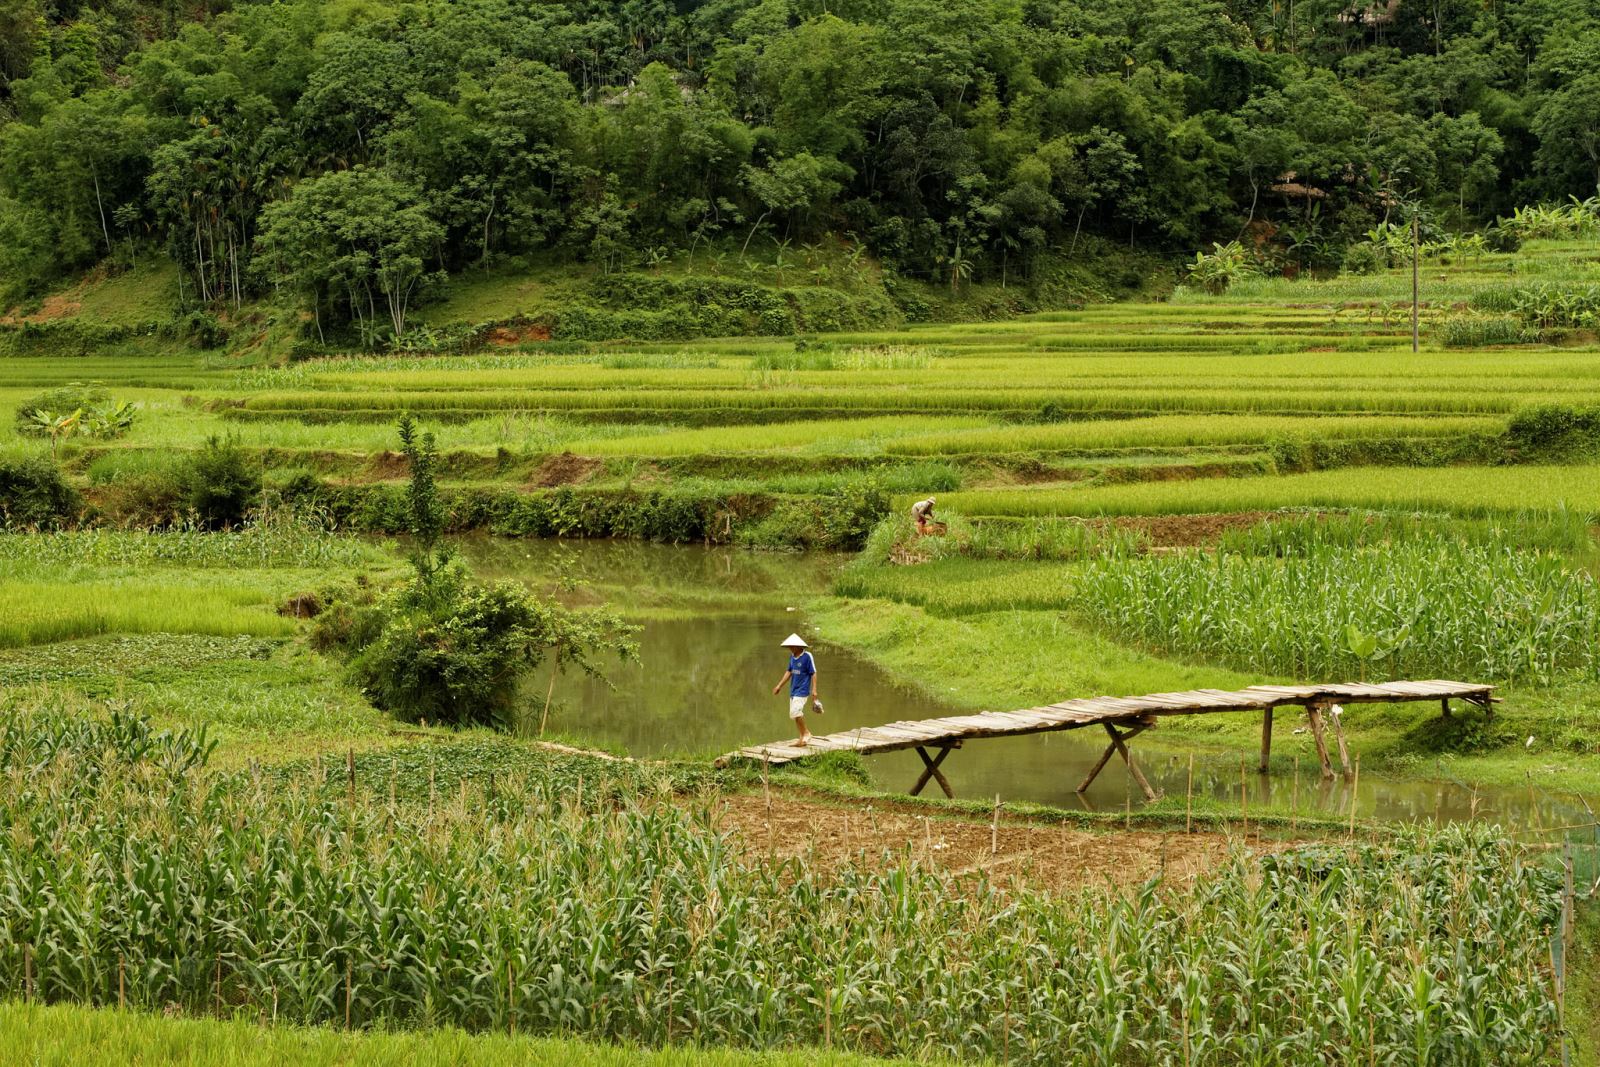 Khung cảnh xanh mướt mắt ở Pù Luông Thanh Hóa